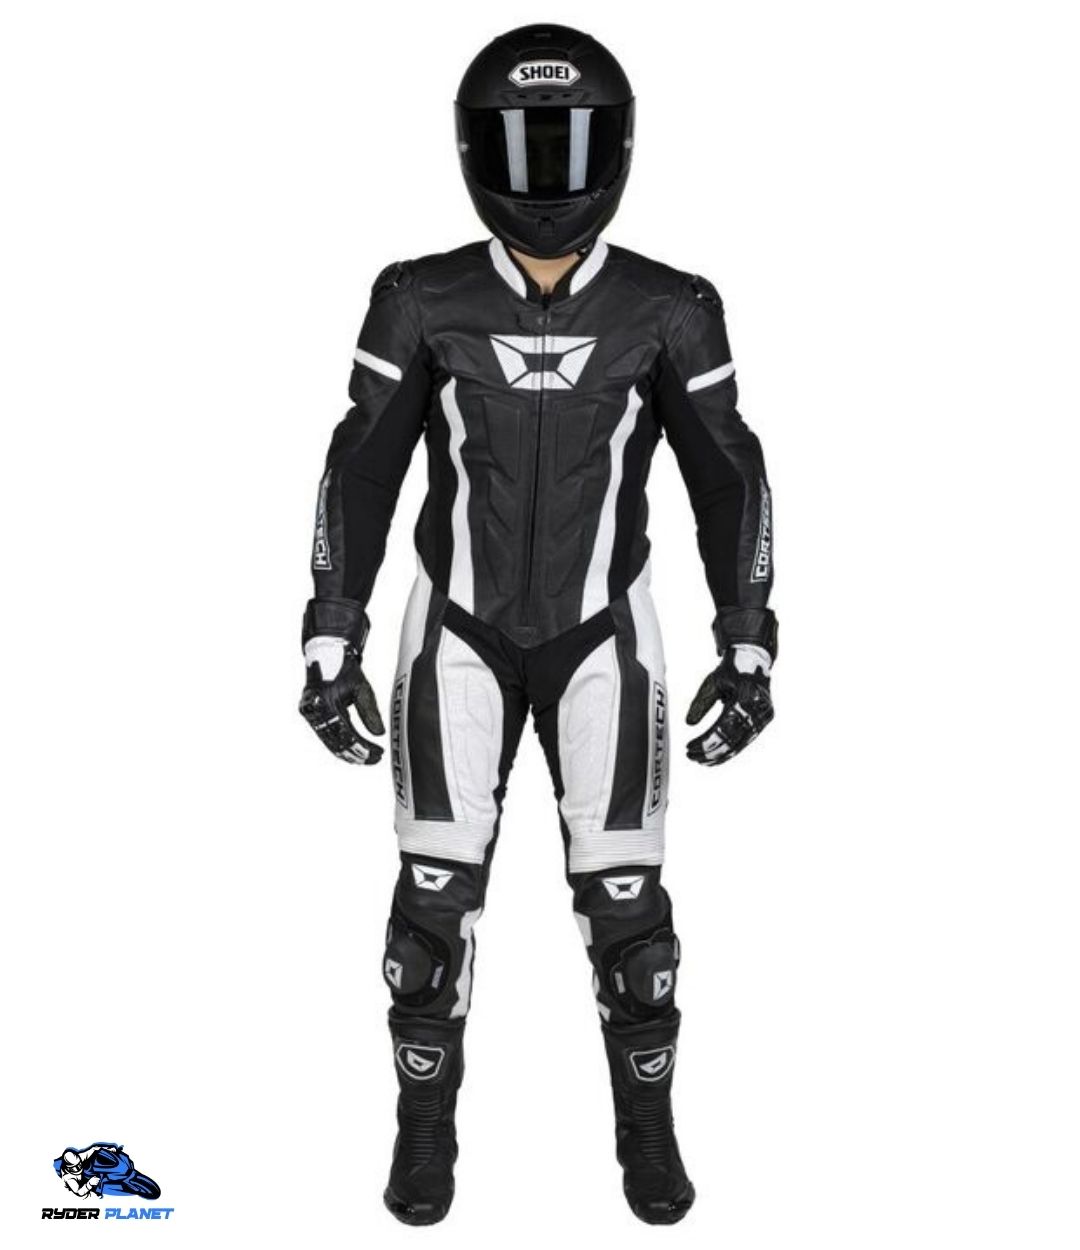 motorcycle race suits australia - Cortech Apex V1 Race Suit